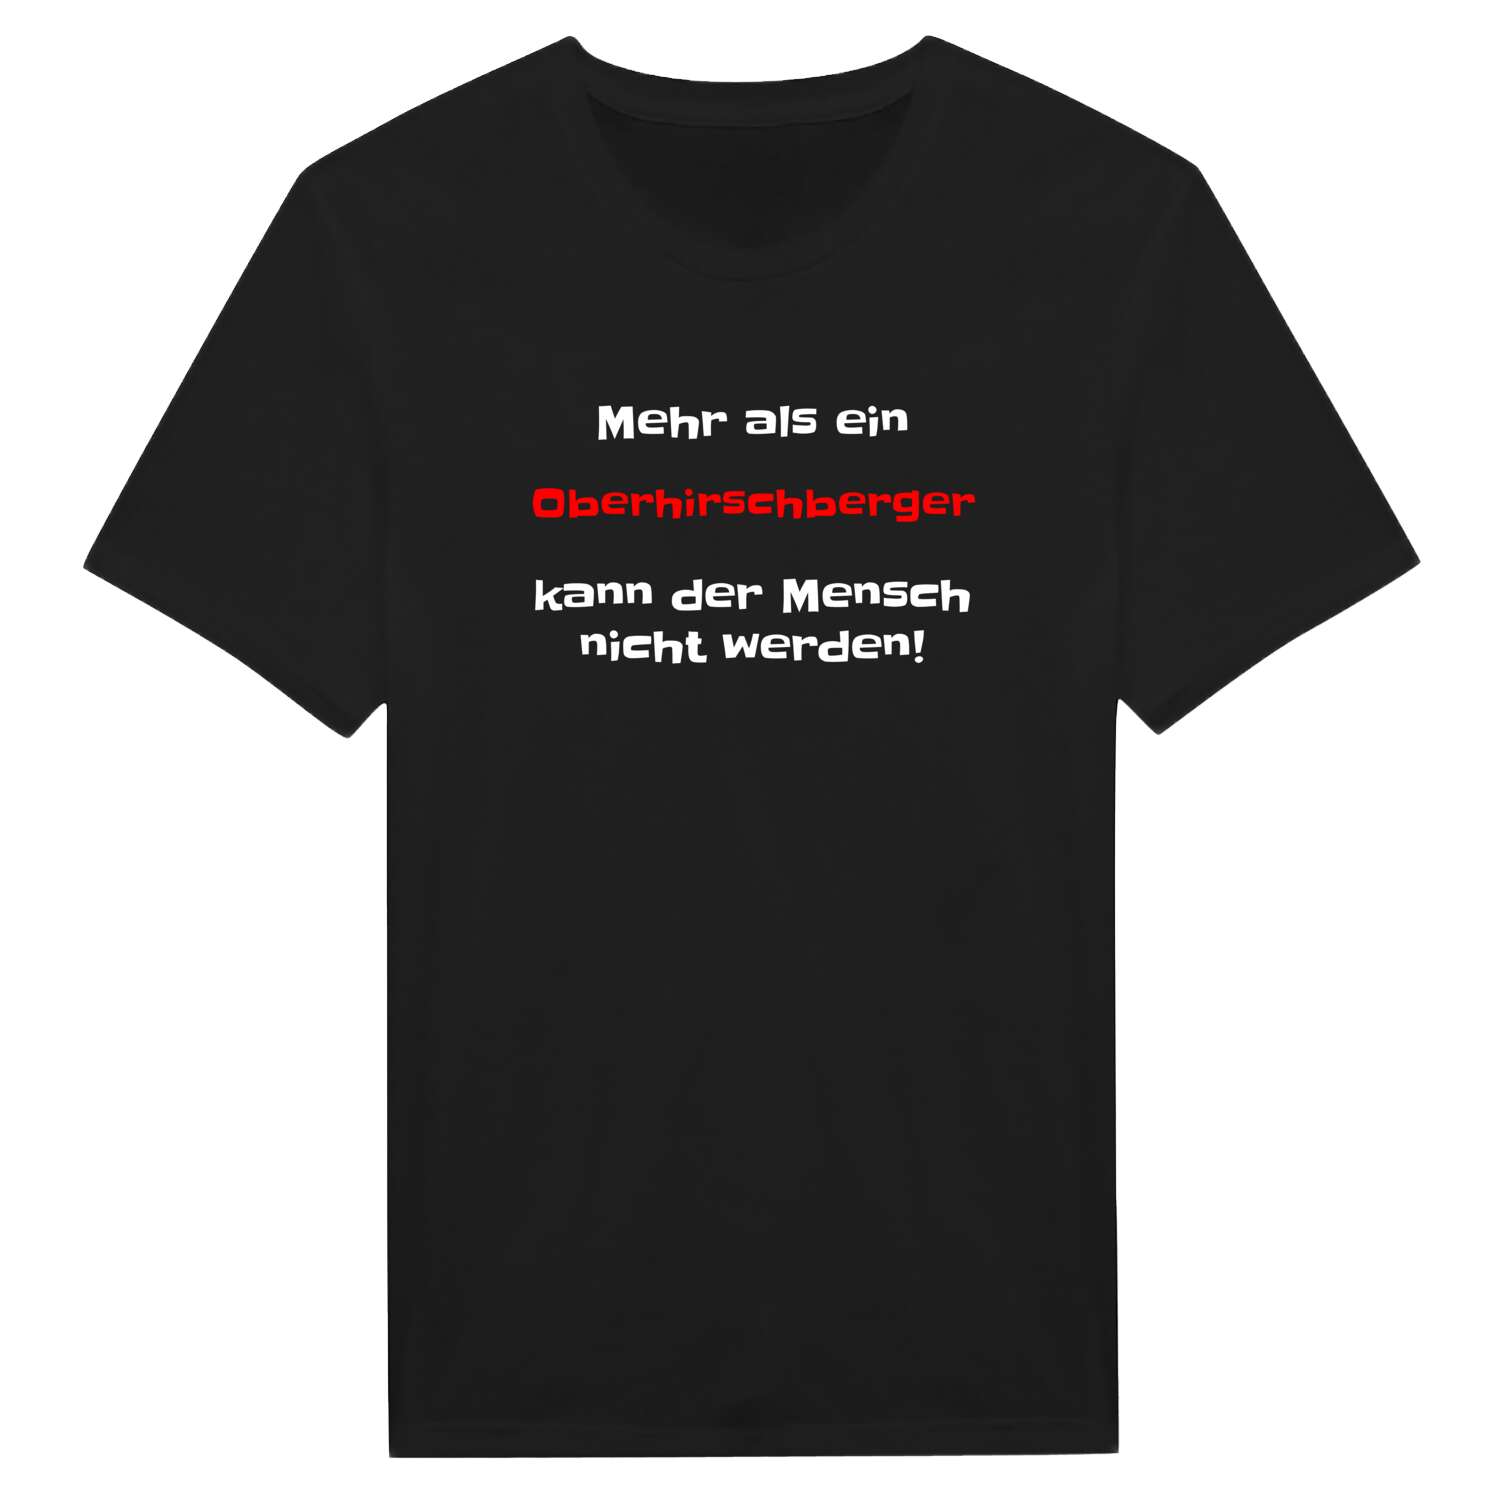 Oberhirschberg T-Shirt »Mehr als ein«